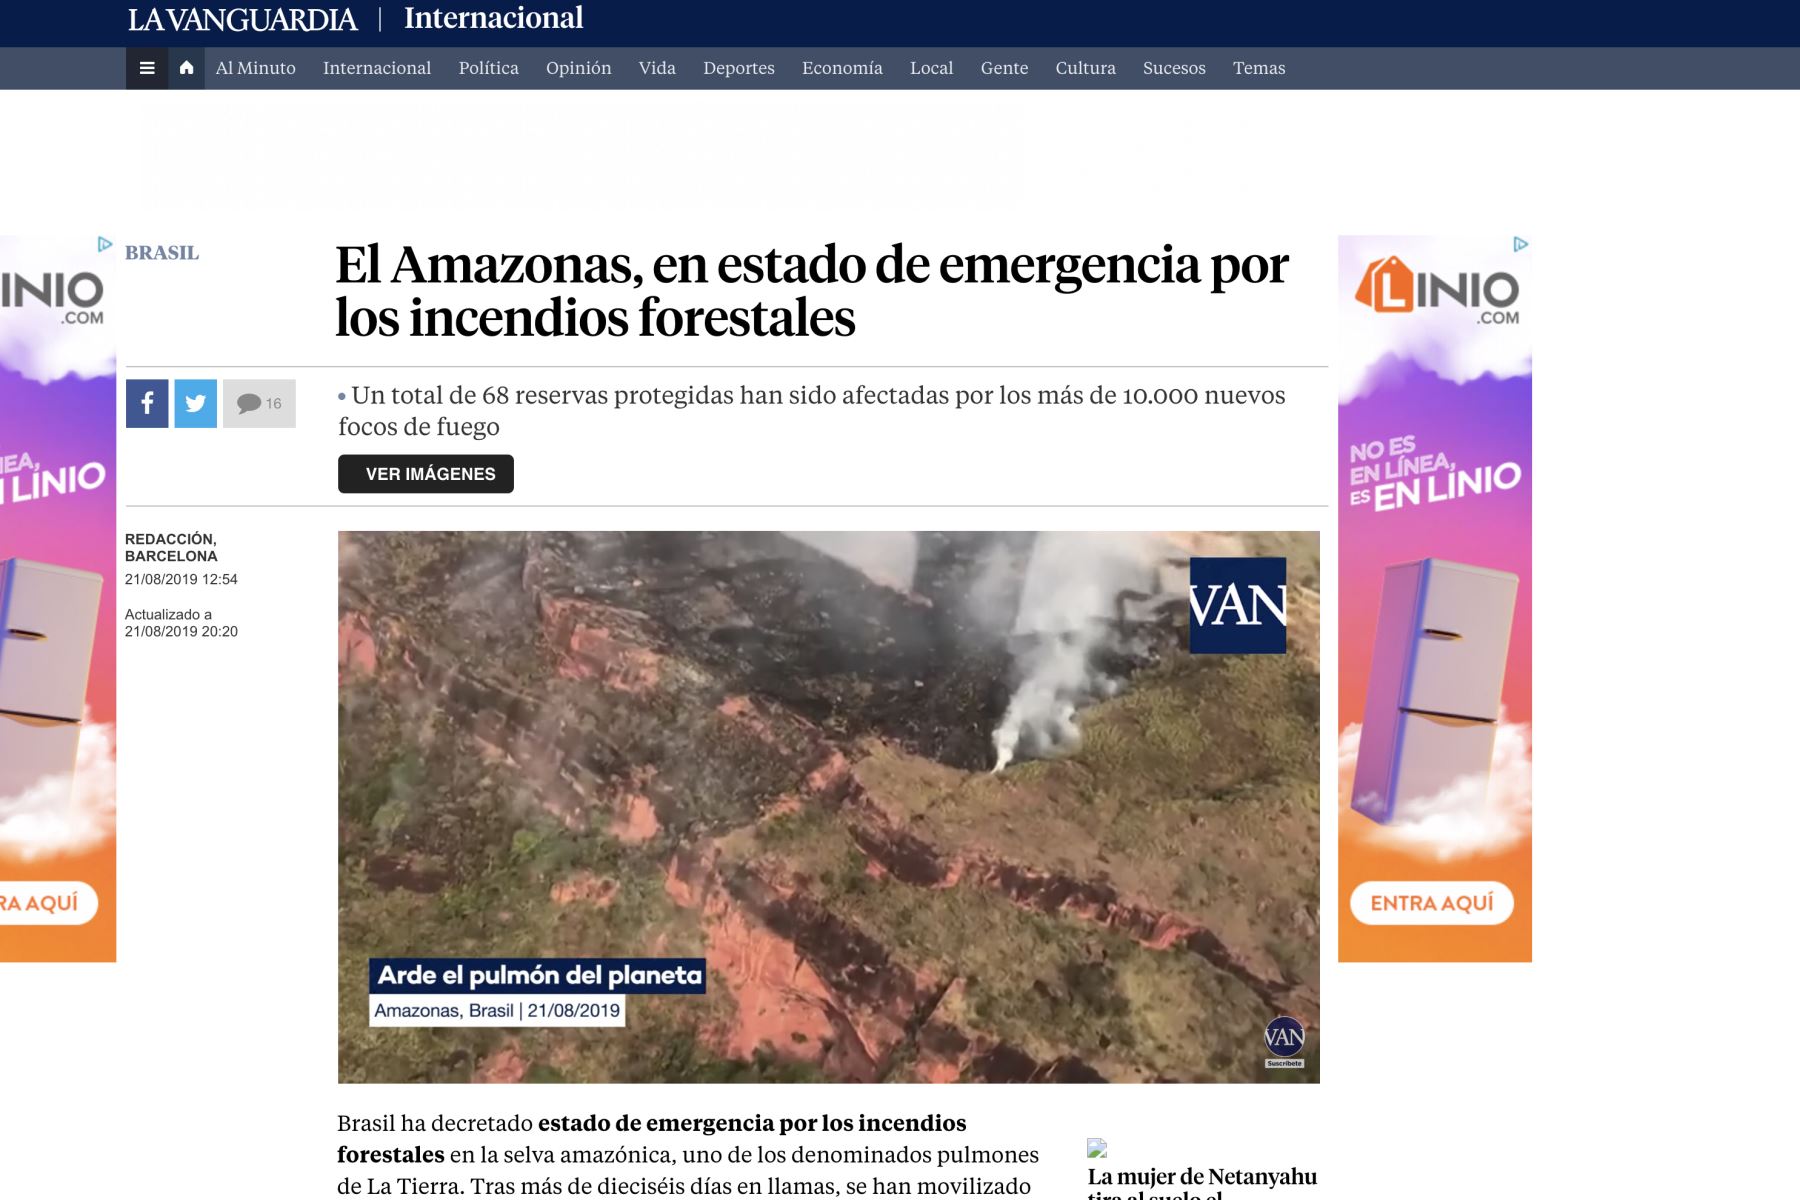 Importantes medios de comunicación informan sobre el incendio en la Amazonia.Foto:Internet medios